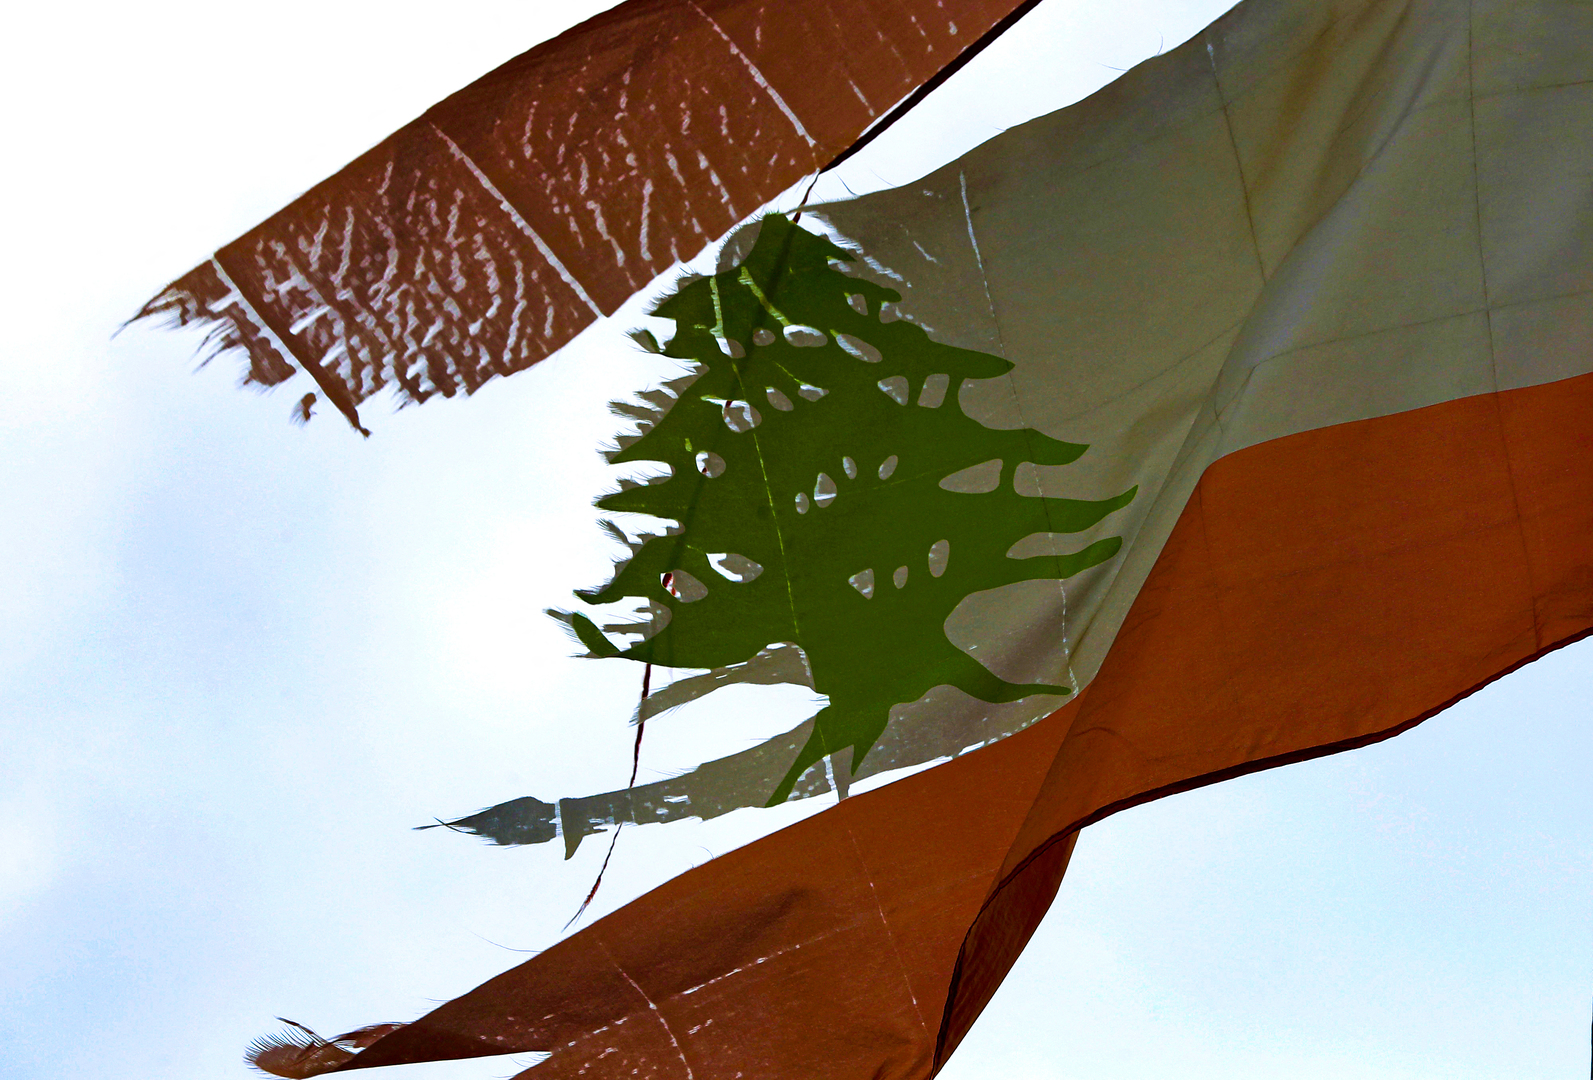 لبنان: لا رابط بين الانتخابات النيابية وإثارة ملف النزوح السوري